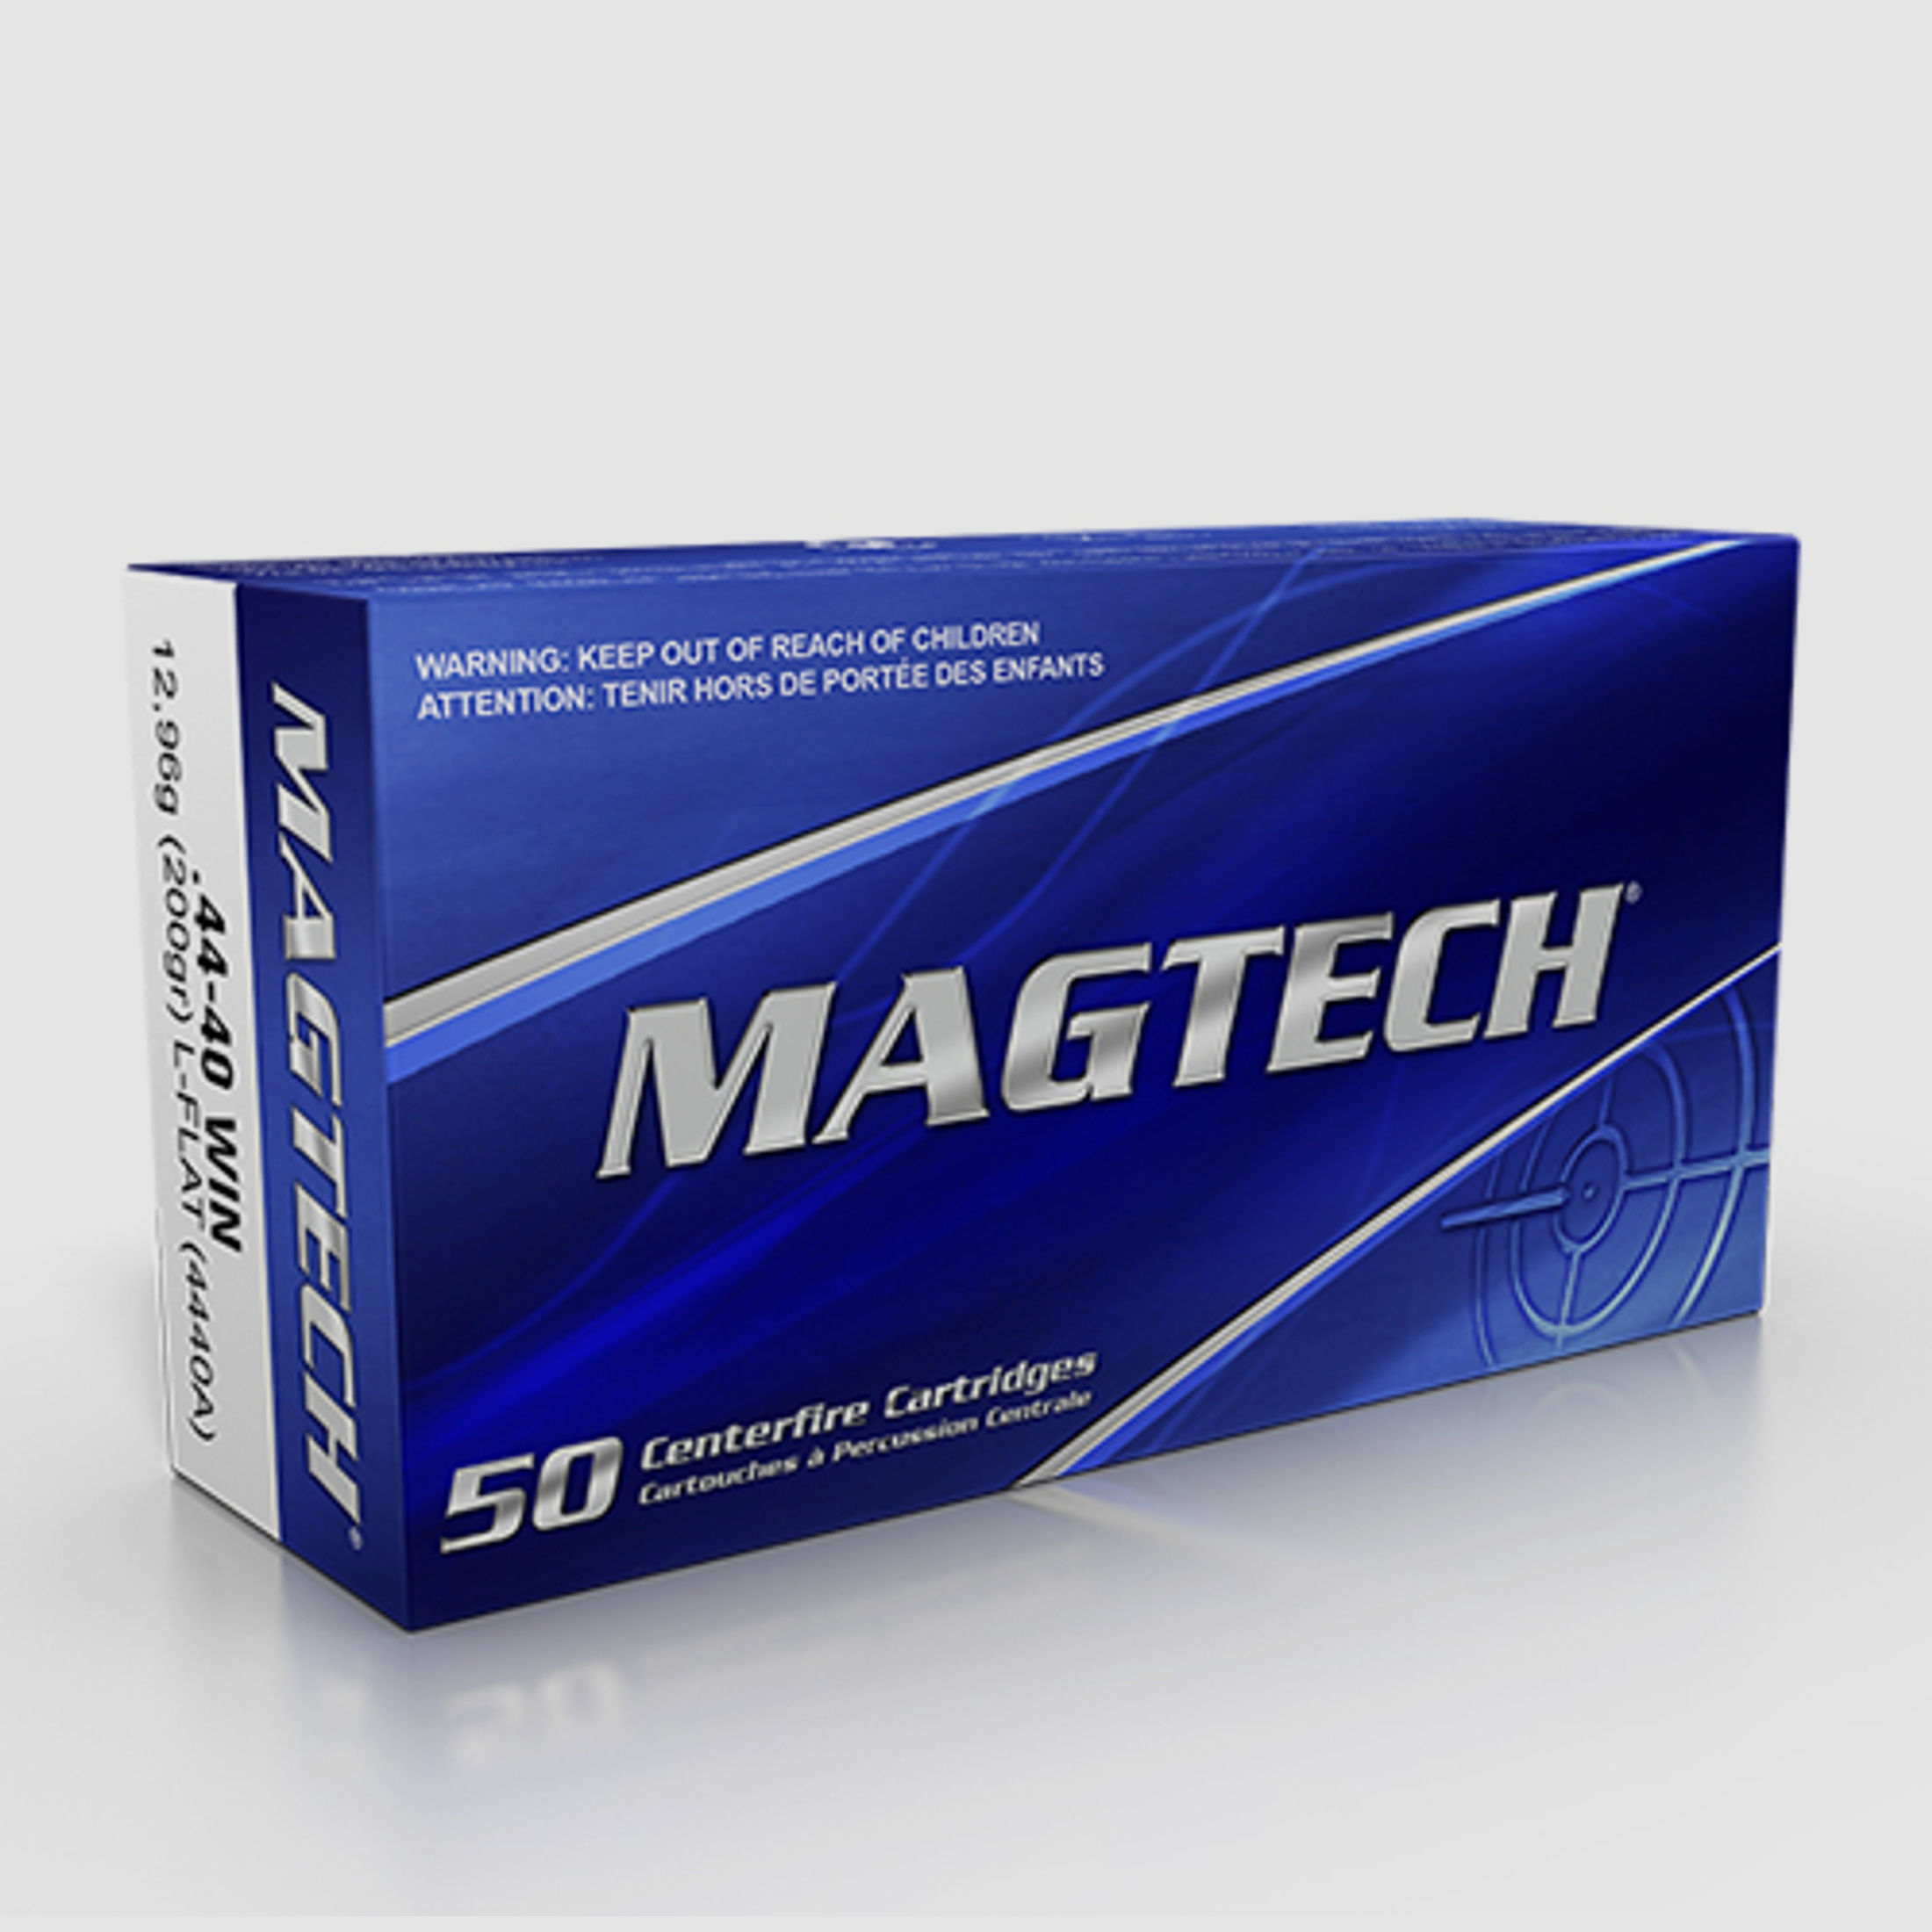 Magtech .44-40 Win. 200GR LFN 50 Patronen